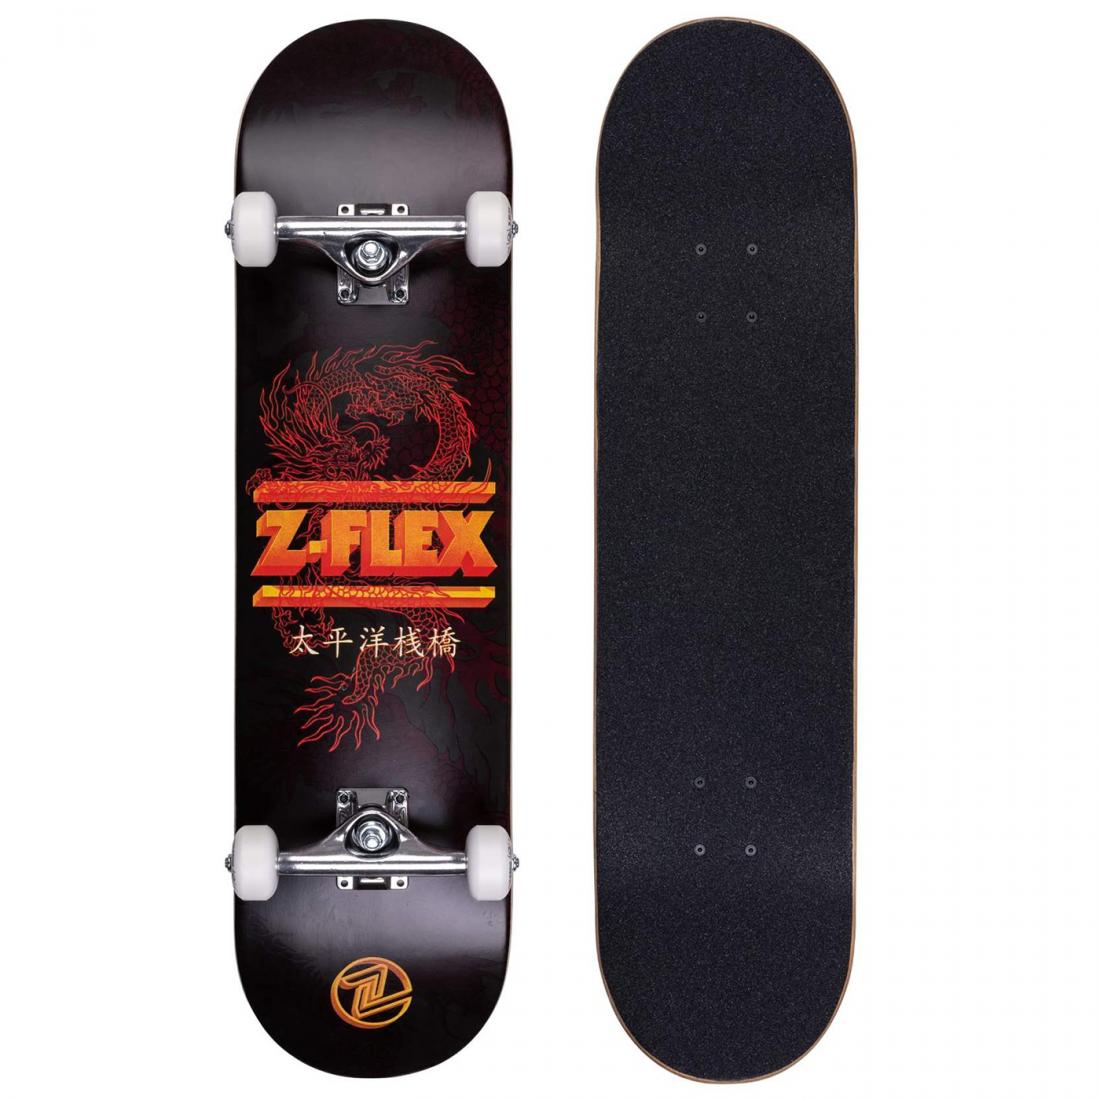 Комплект скейтборд DRAGON Z-Flex, цвет черный 1, размер 8.25